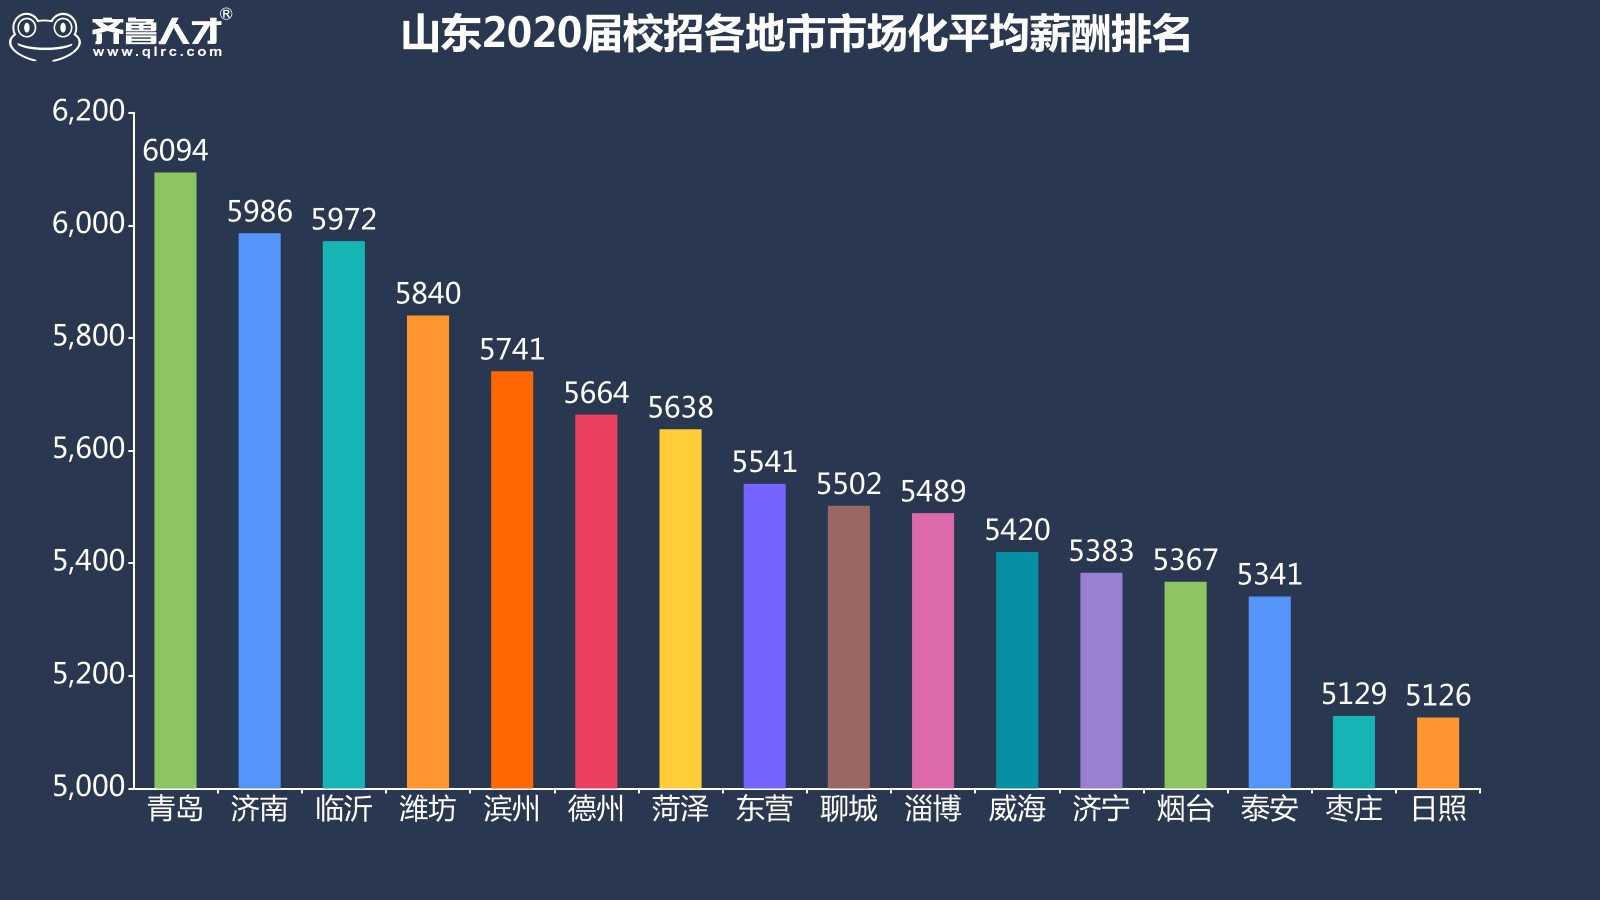 齊魯人才網濟南成為山東2020屆高校畢業生就業地首選，平均薪酬達5986元圖5.jpg